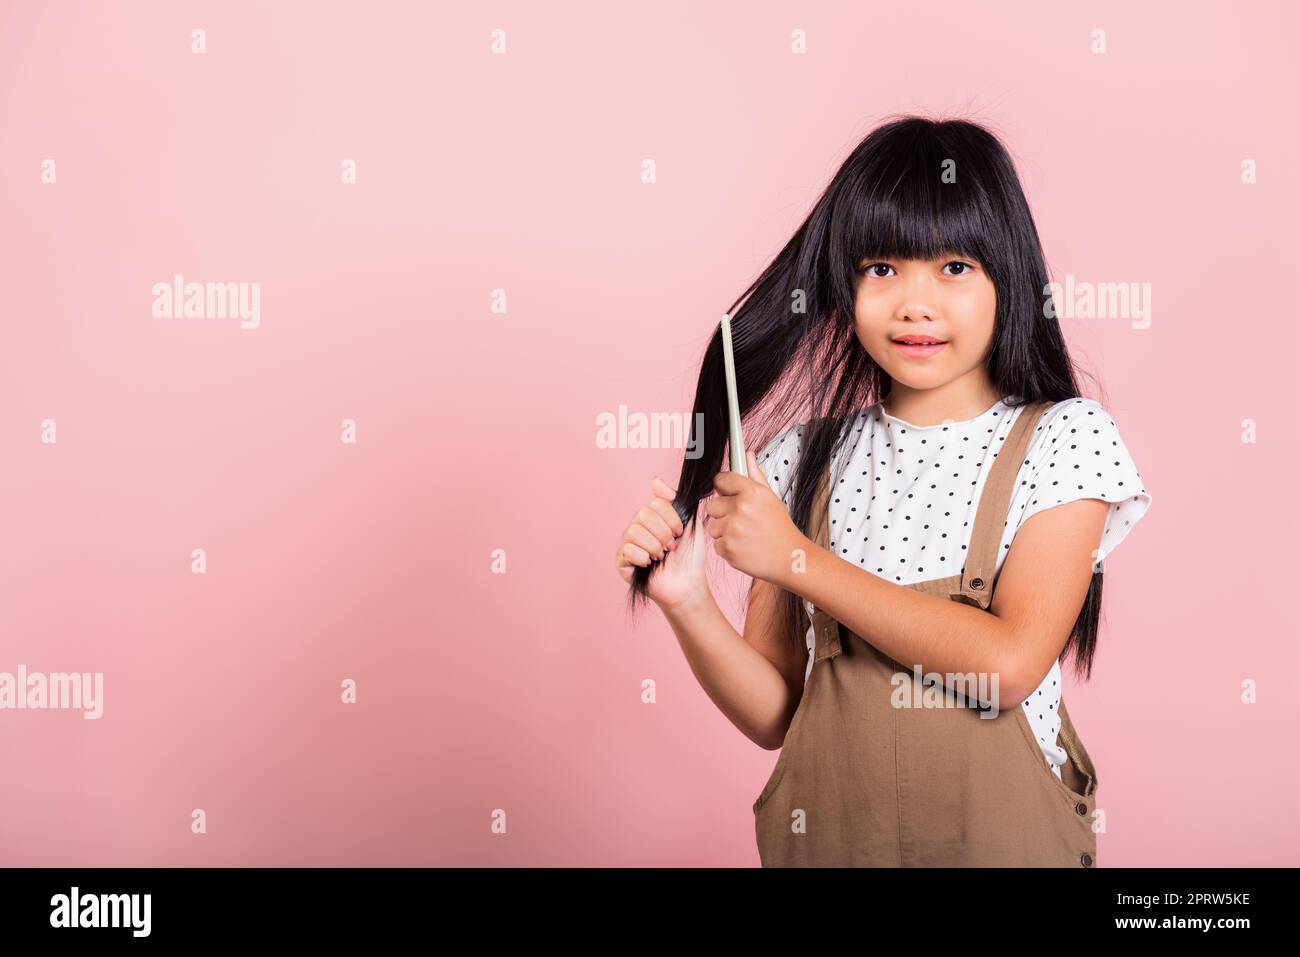 Asiatische kleine Kind 10 Jahre alt halten Kamm Bürsten sie widerspenstig sie berühren ihre lange schwarze Haare Stockfoto